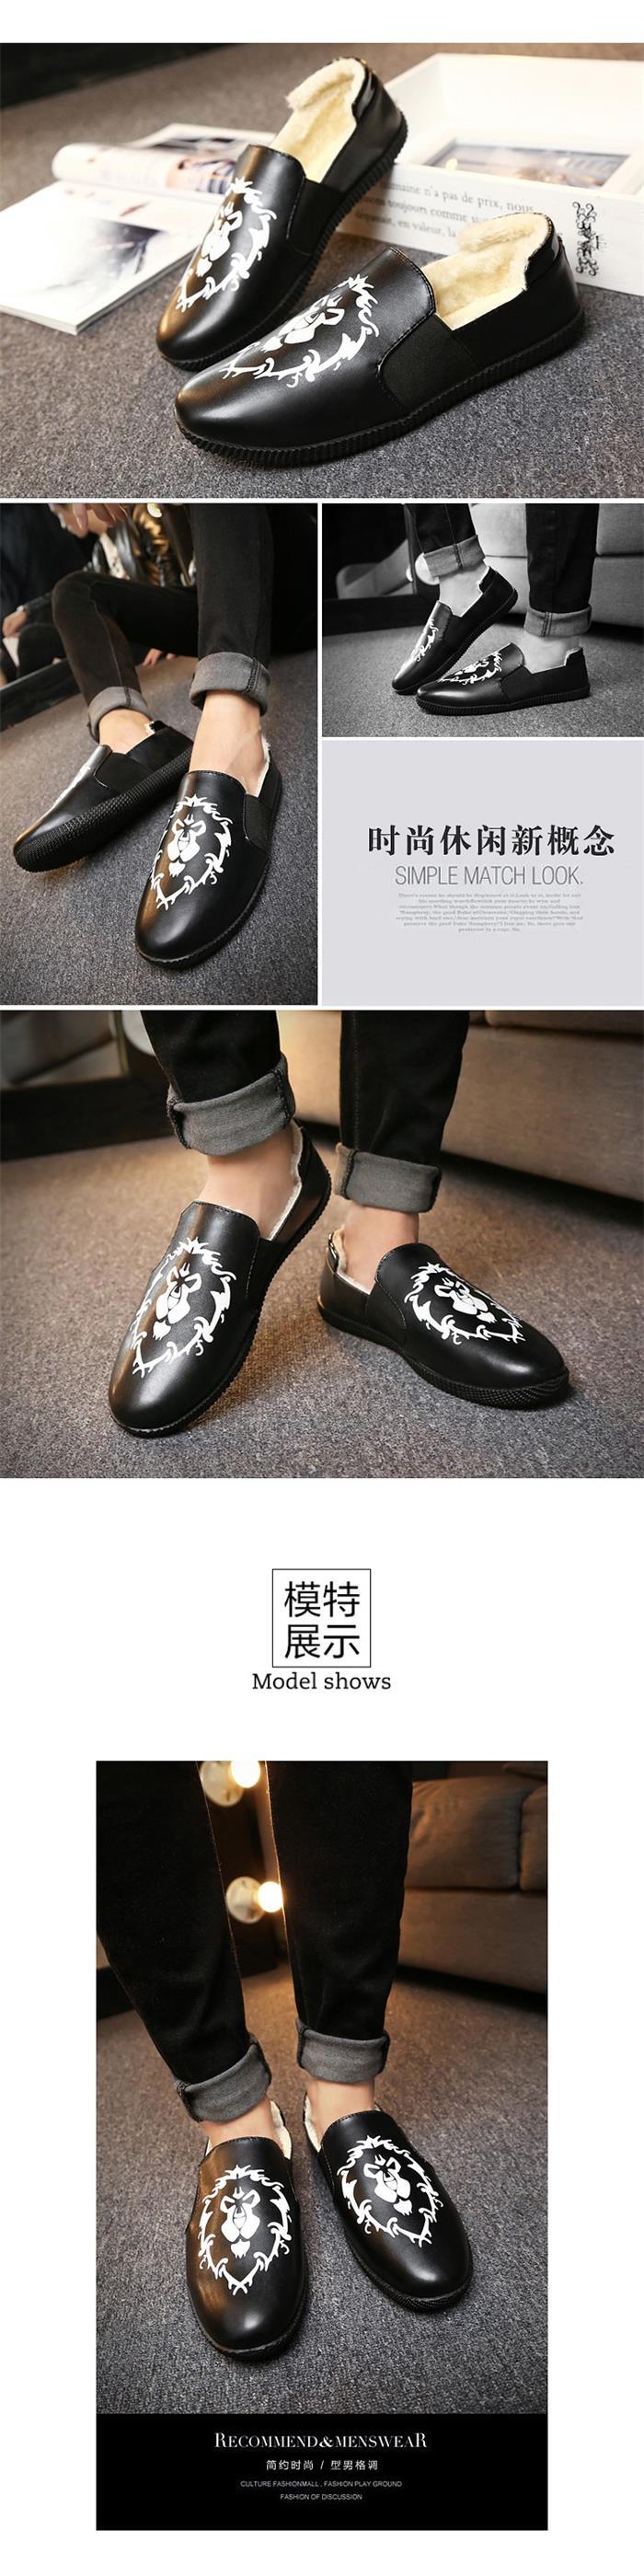 新款冬季豆豆鞋男鞋社会小伙韩版潮鞋精神冬天皮鞋加绒二棉鞋